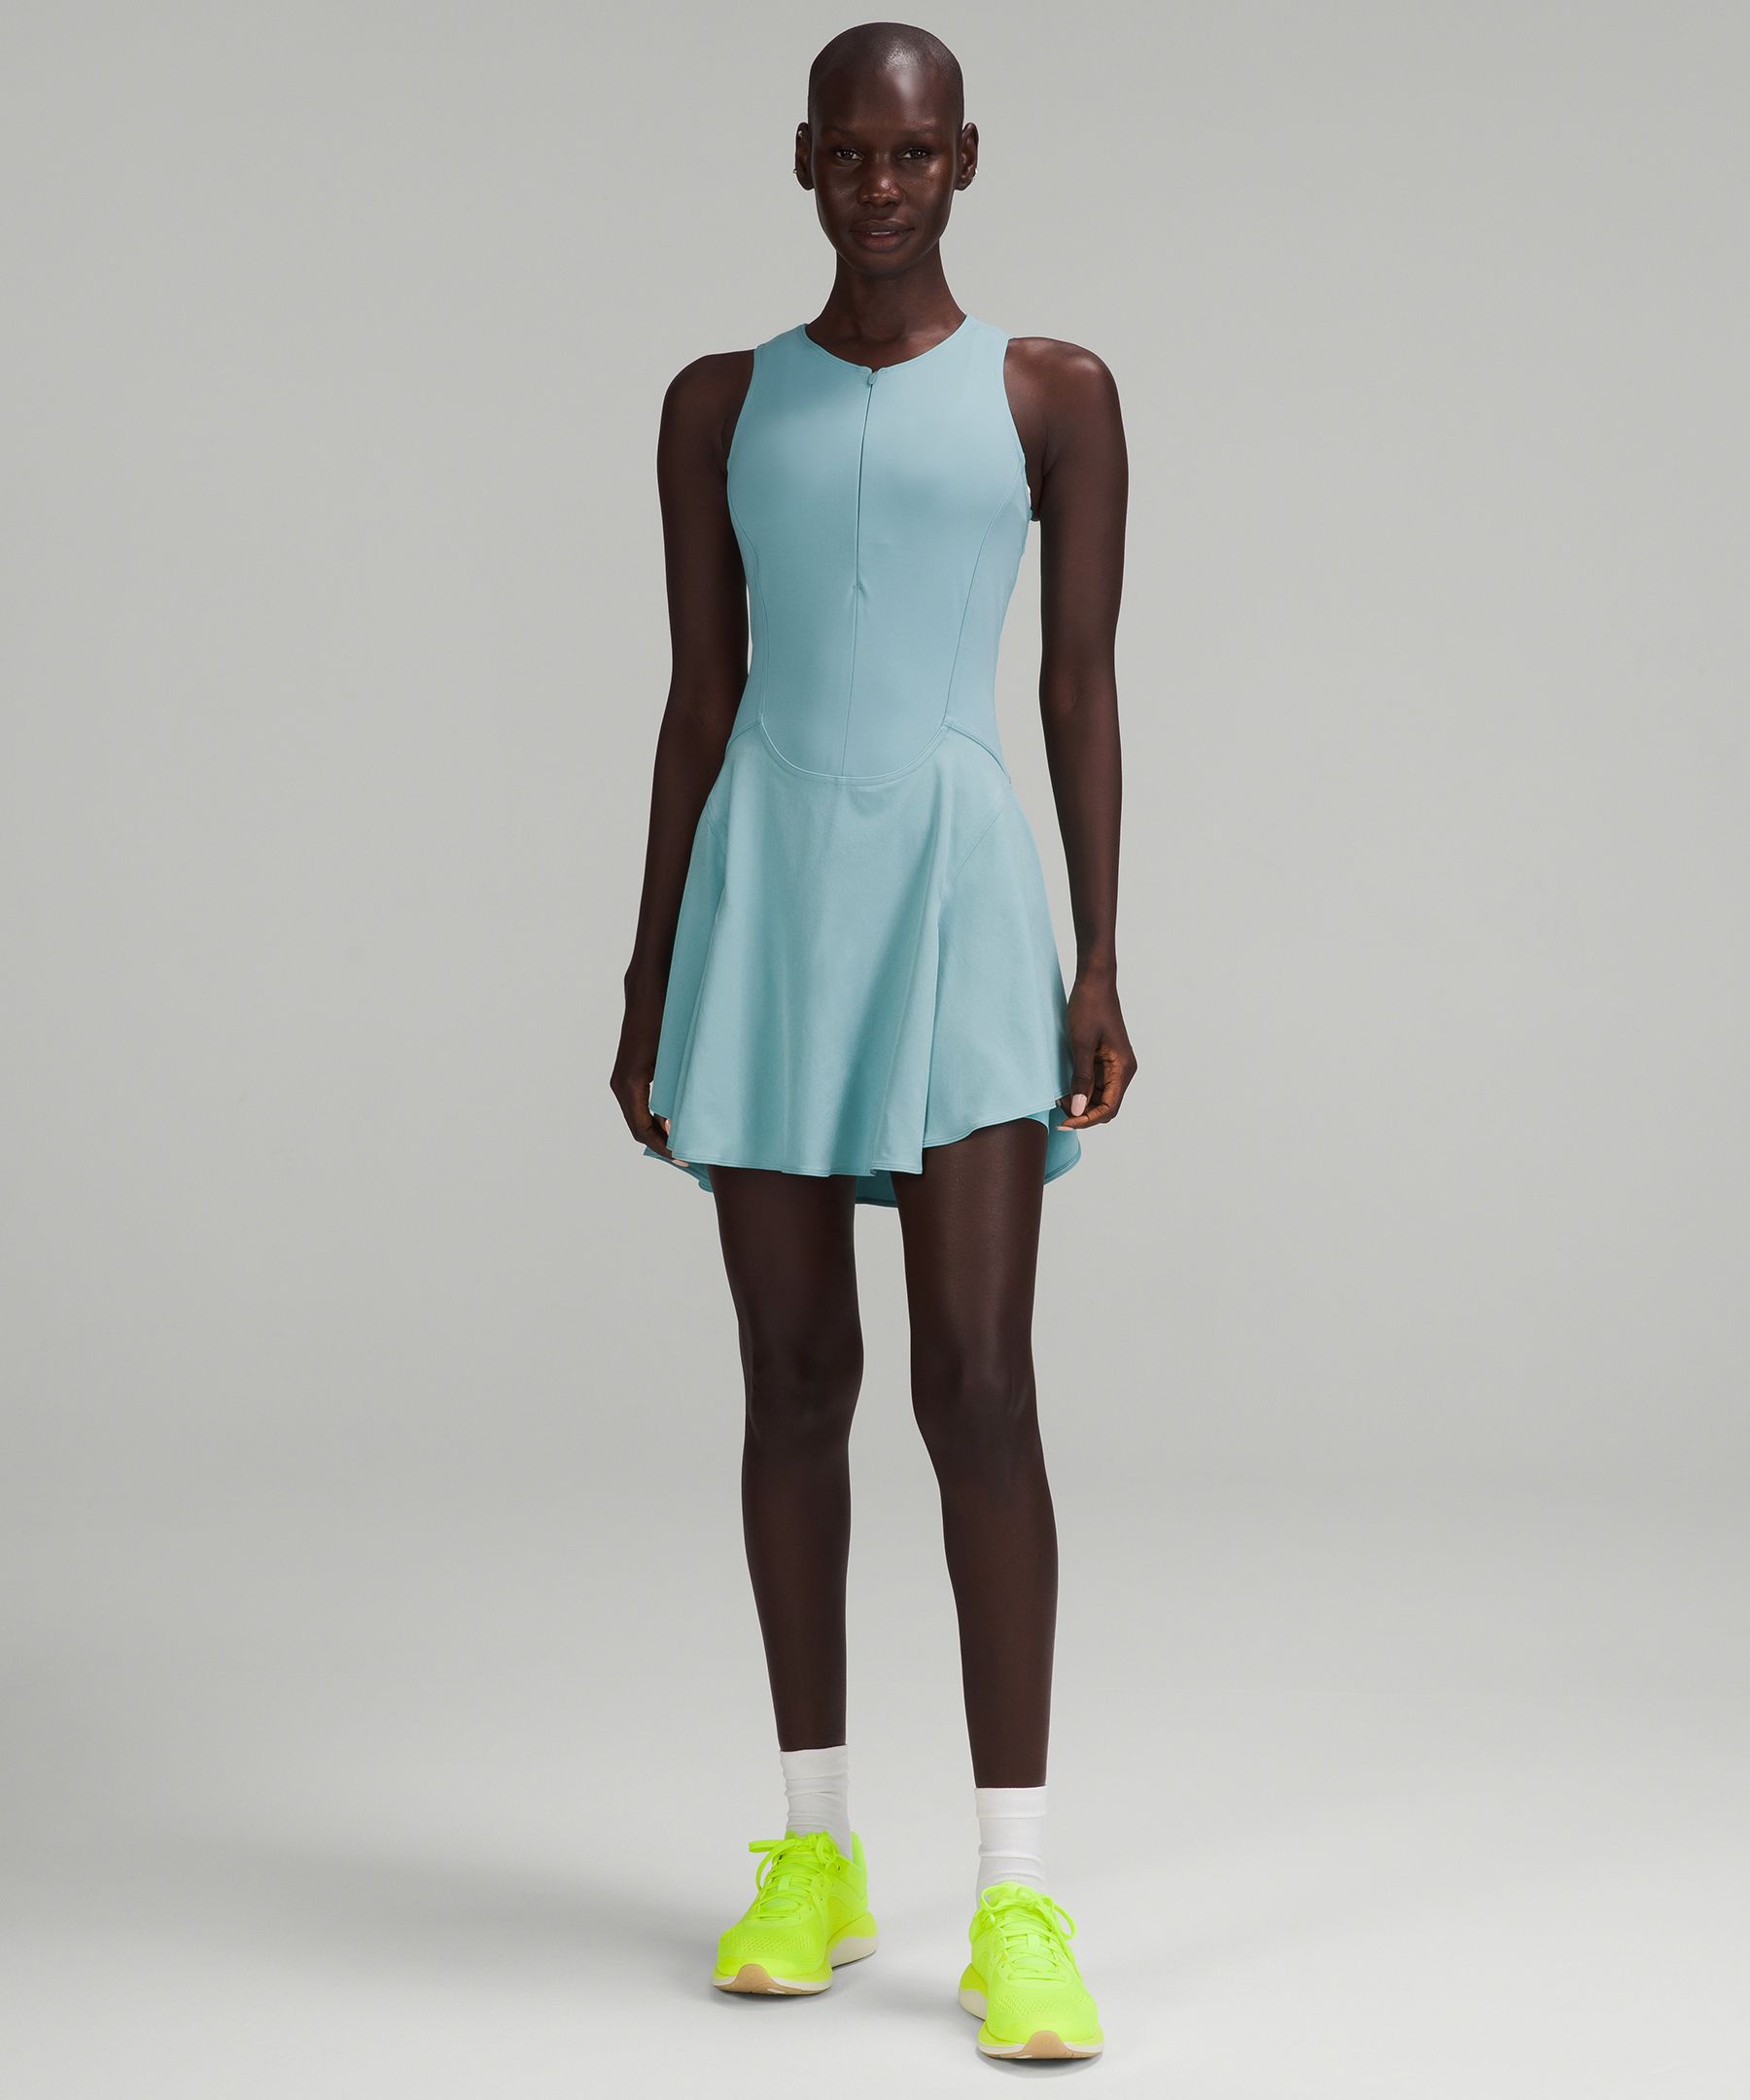 Lululemon Everlux Short-lined Tennis Tank Top Dress 6"